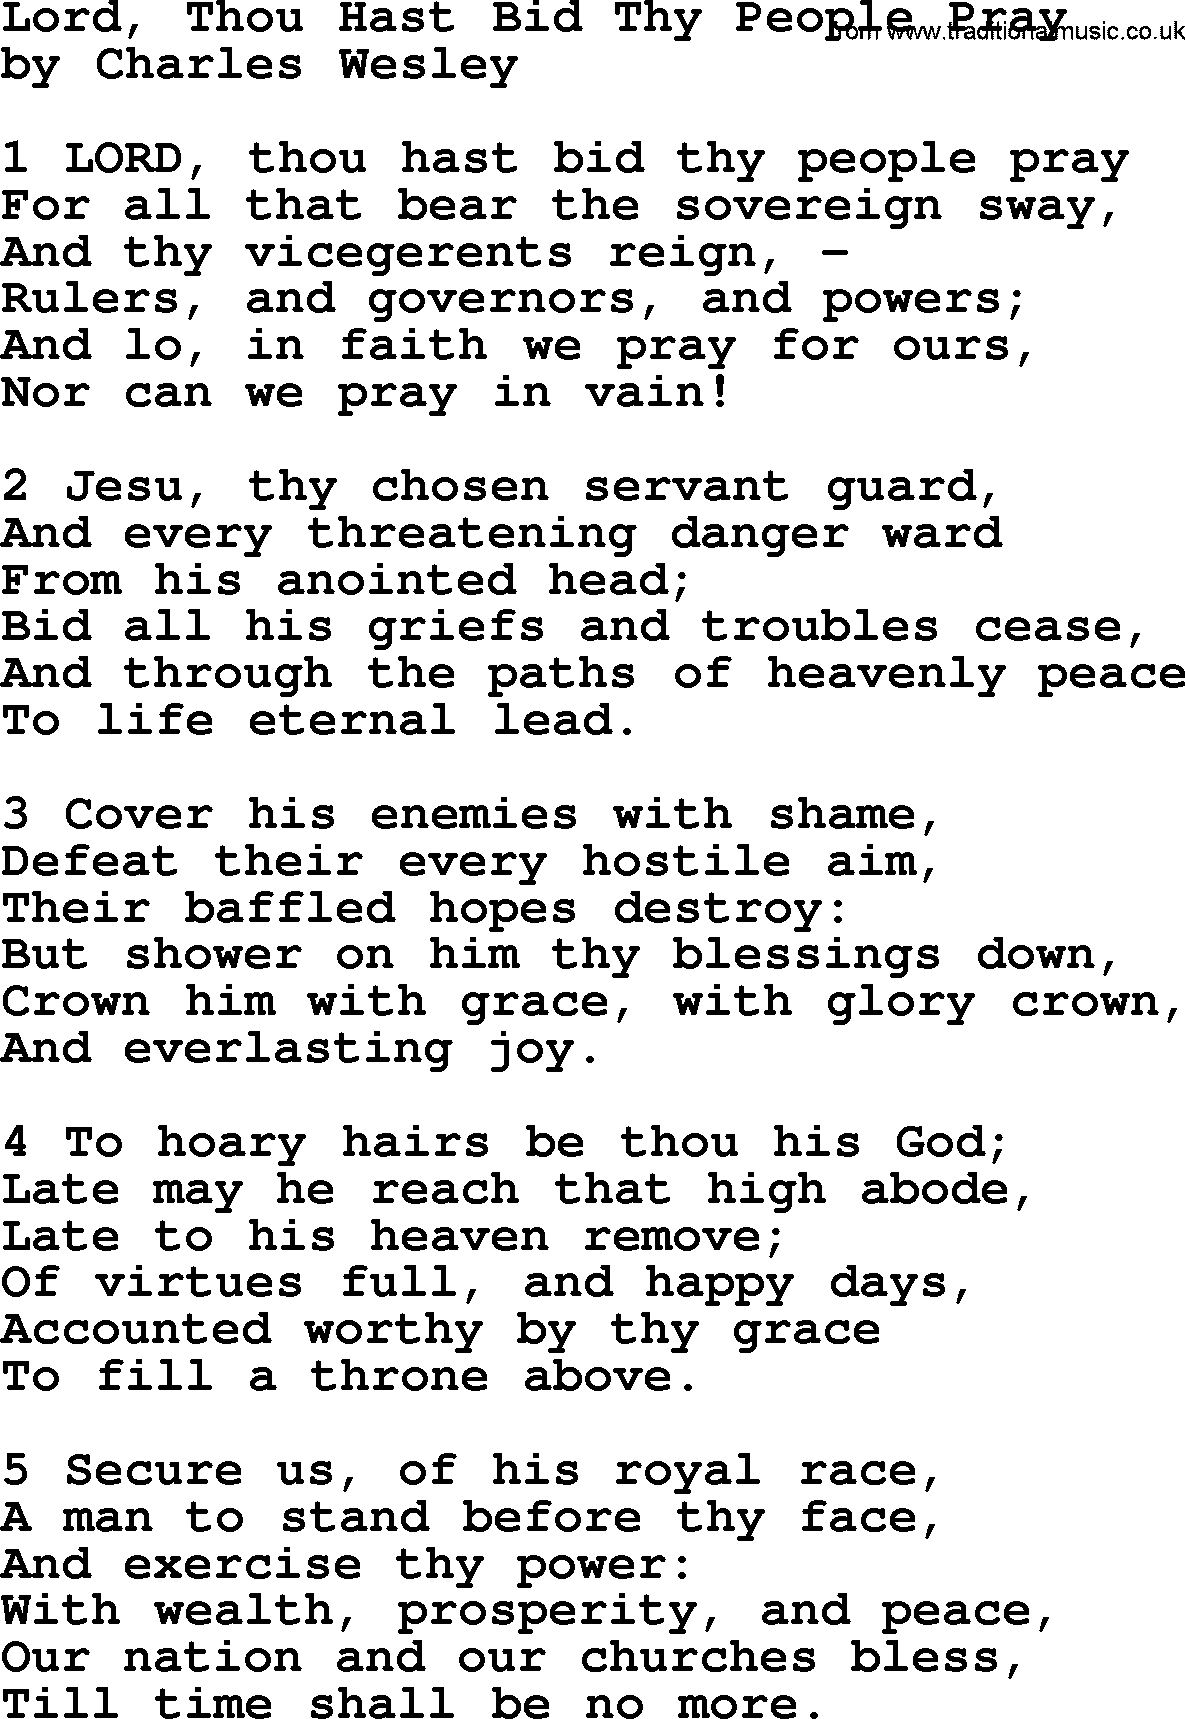 Charles Wesley hymn: Lord, Thou Hast Bid Thy People Pray, lyrics